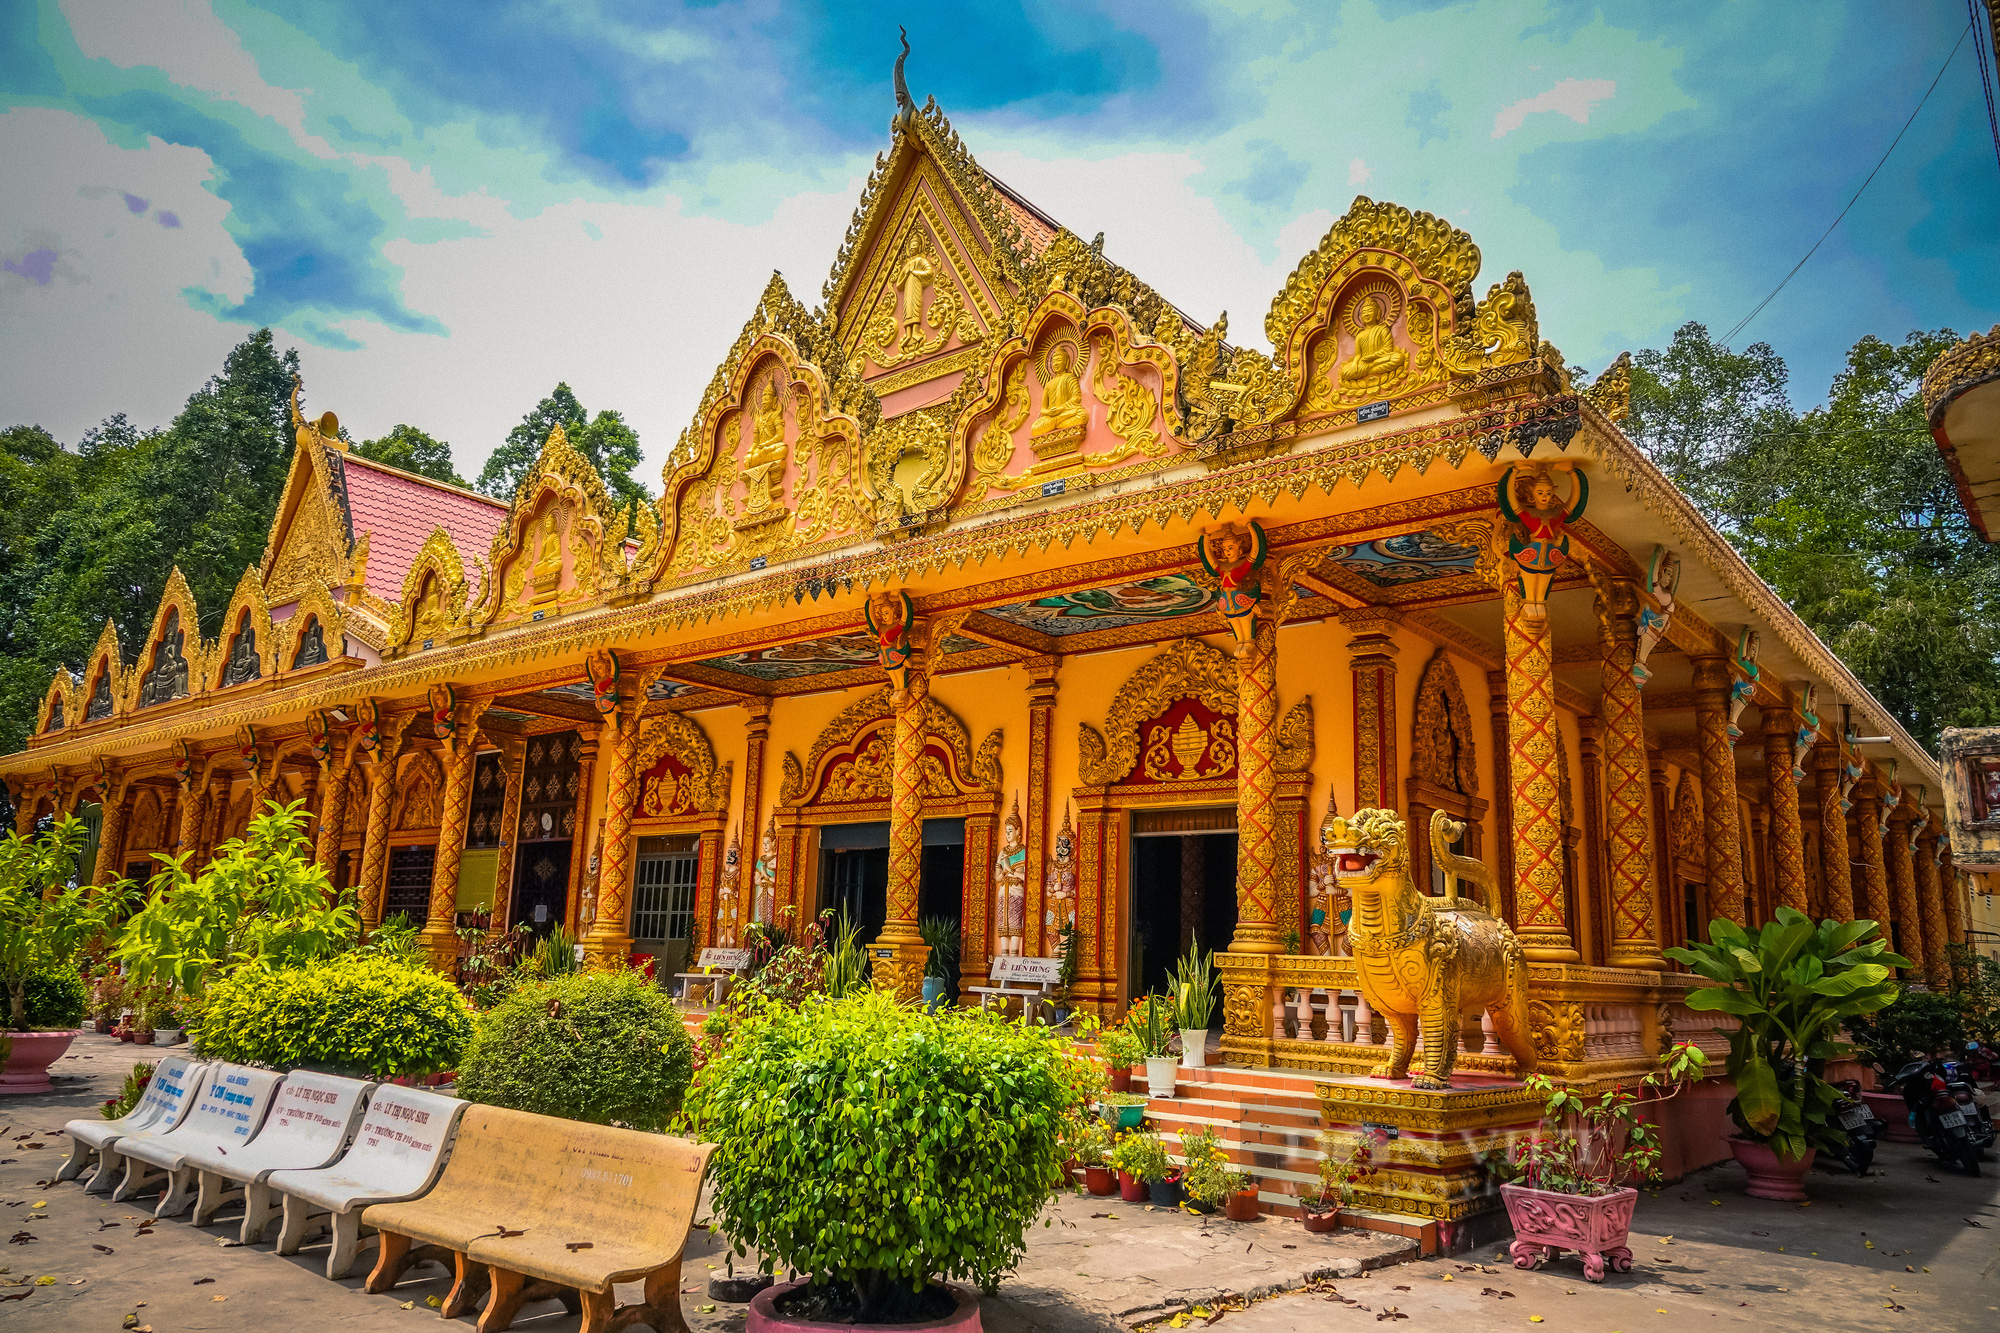 Ngôi chùa Khmer trăm năm tuổi với hàng trăm cây sao cổ thụ “độc” nhất Sóc Trăng - Ảnh 7.